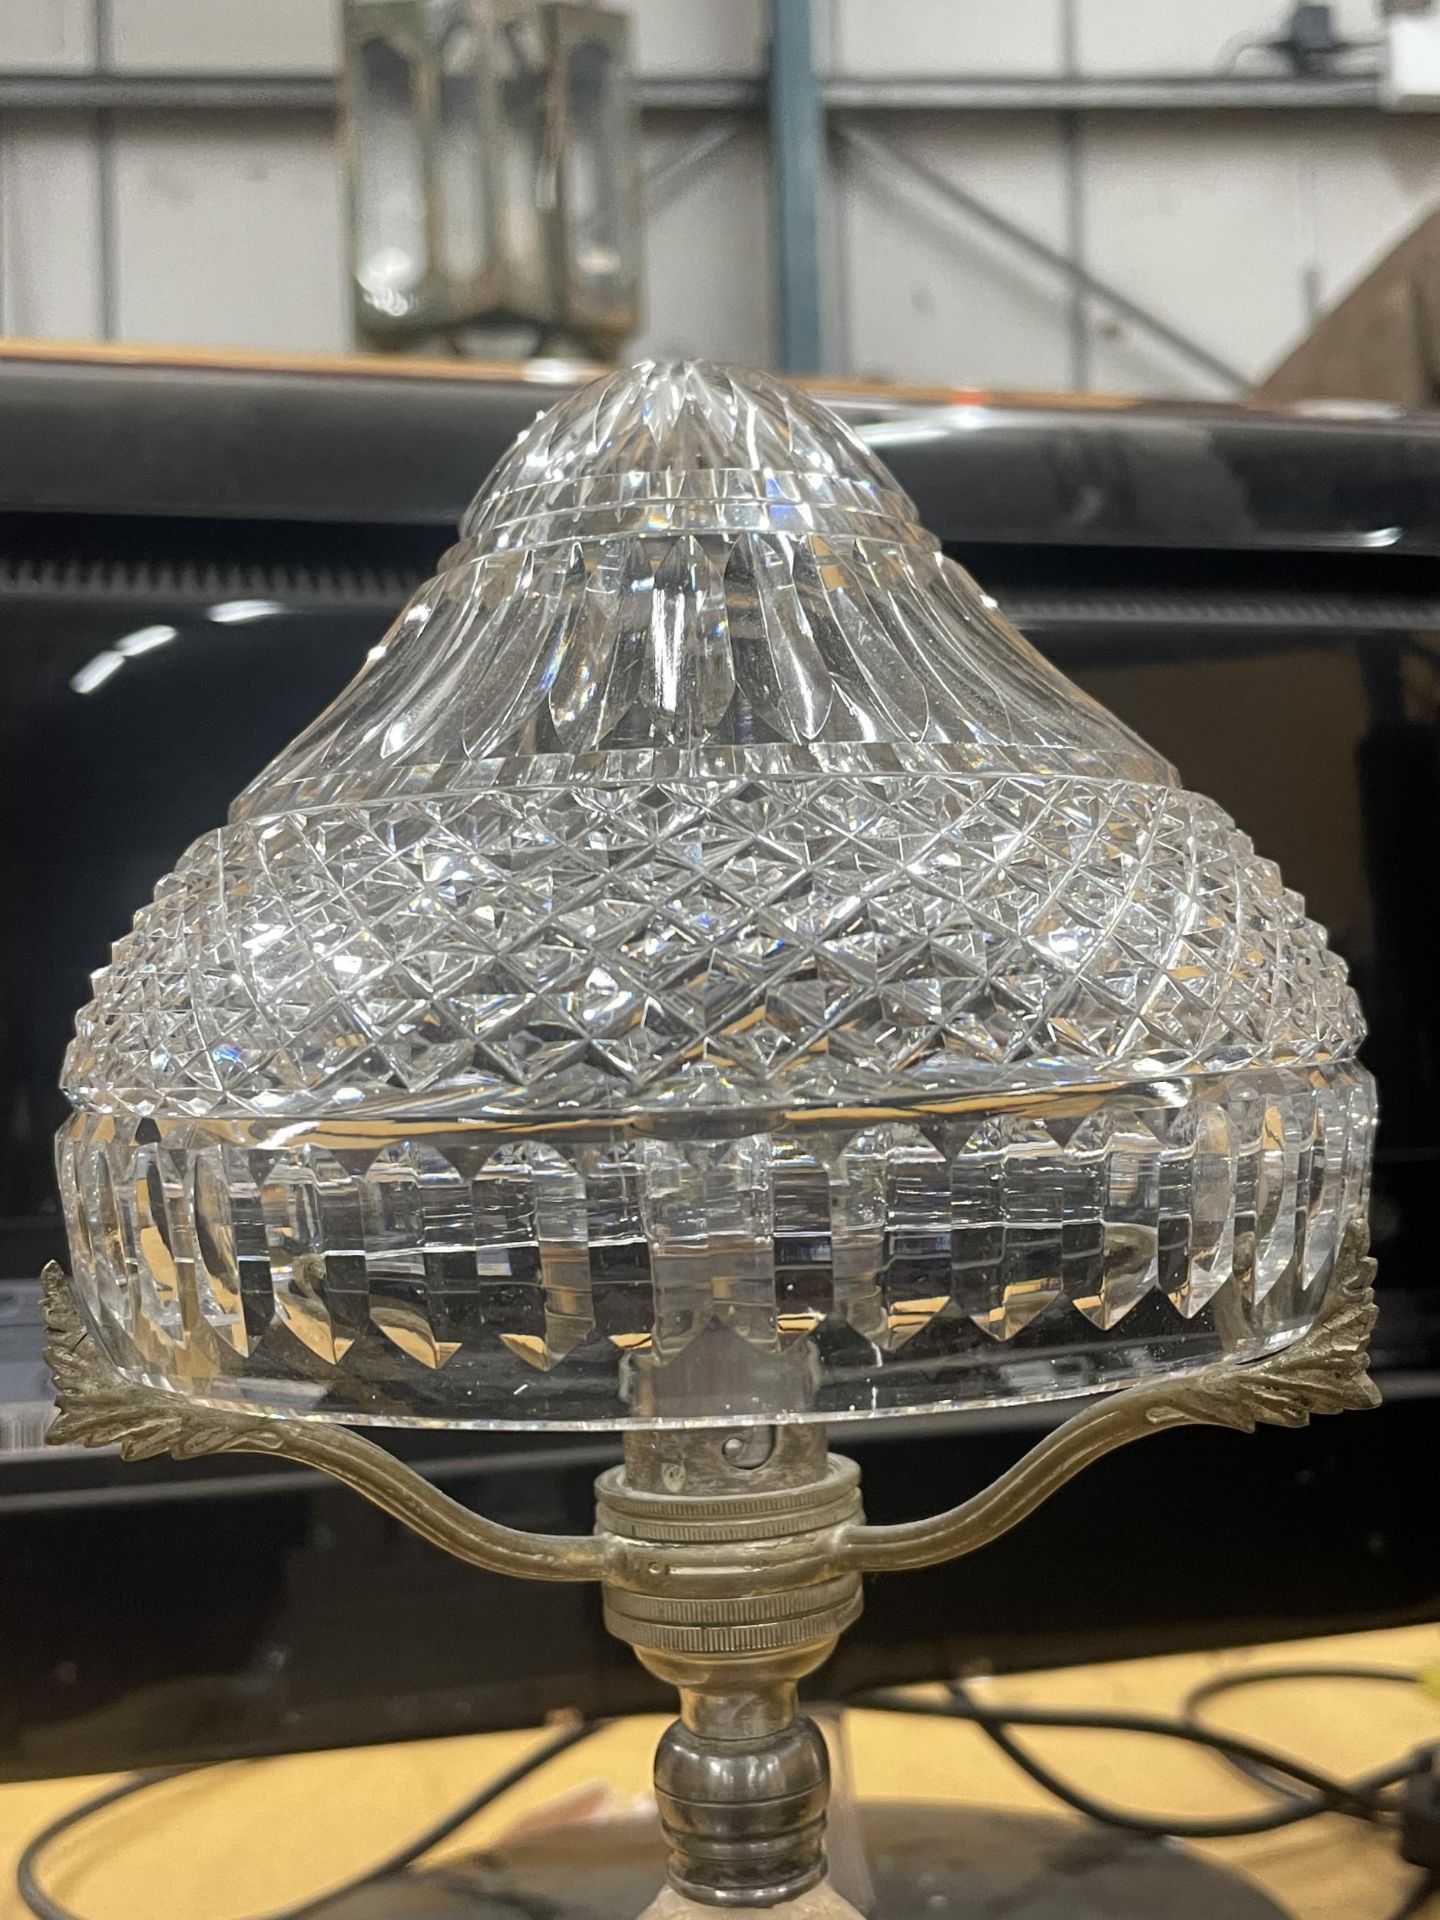 A VINTAGE CUT GLASS MUSHROOM LAMP - Image 2 of 3